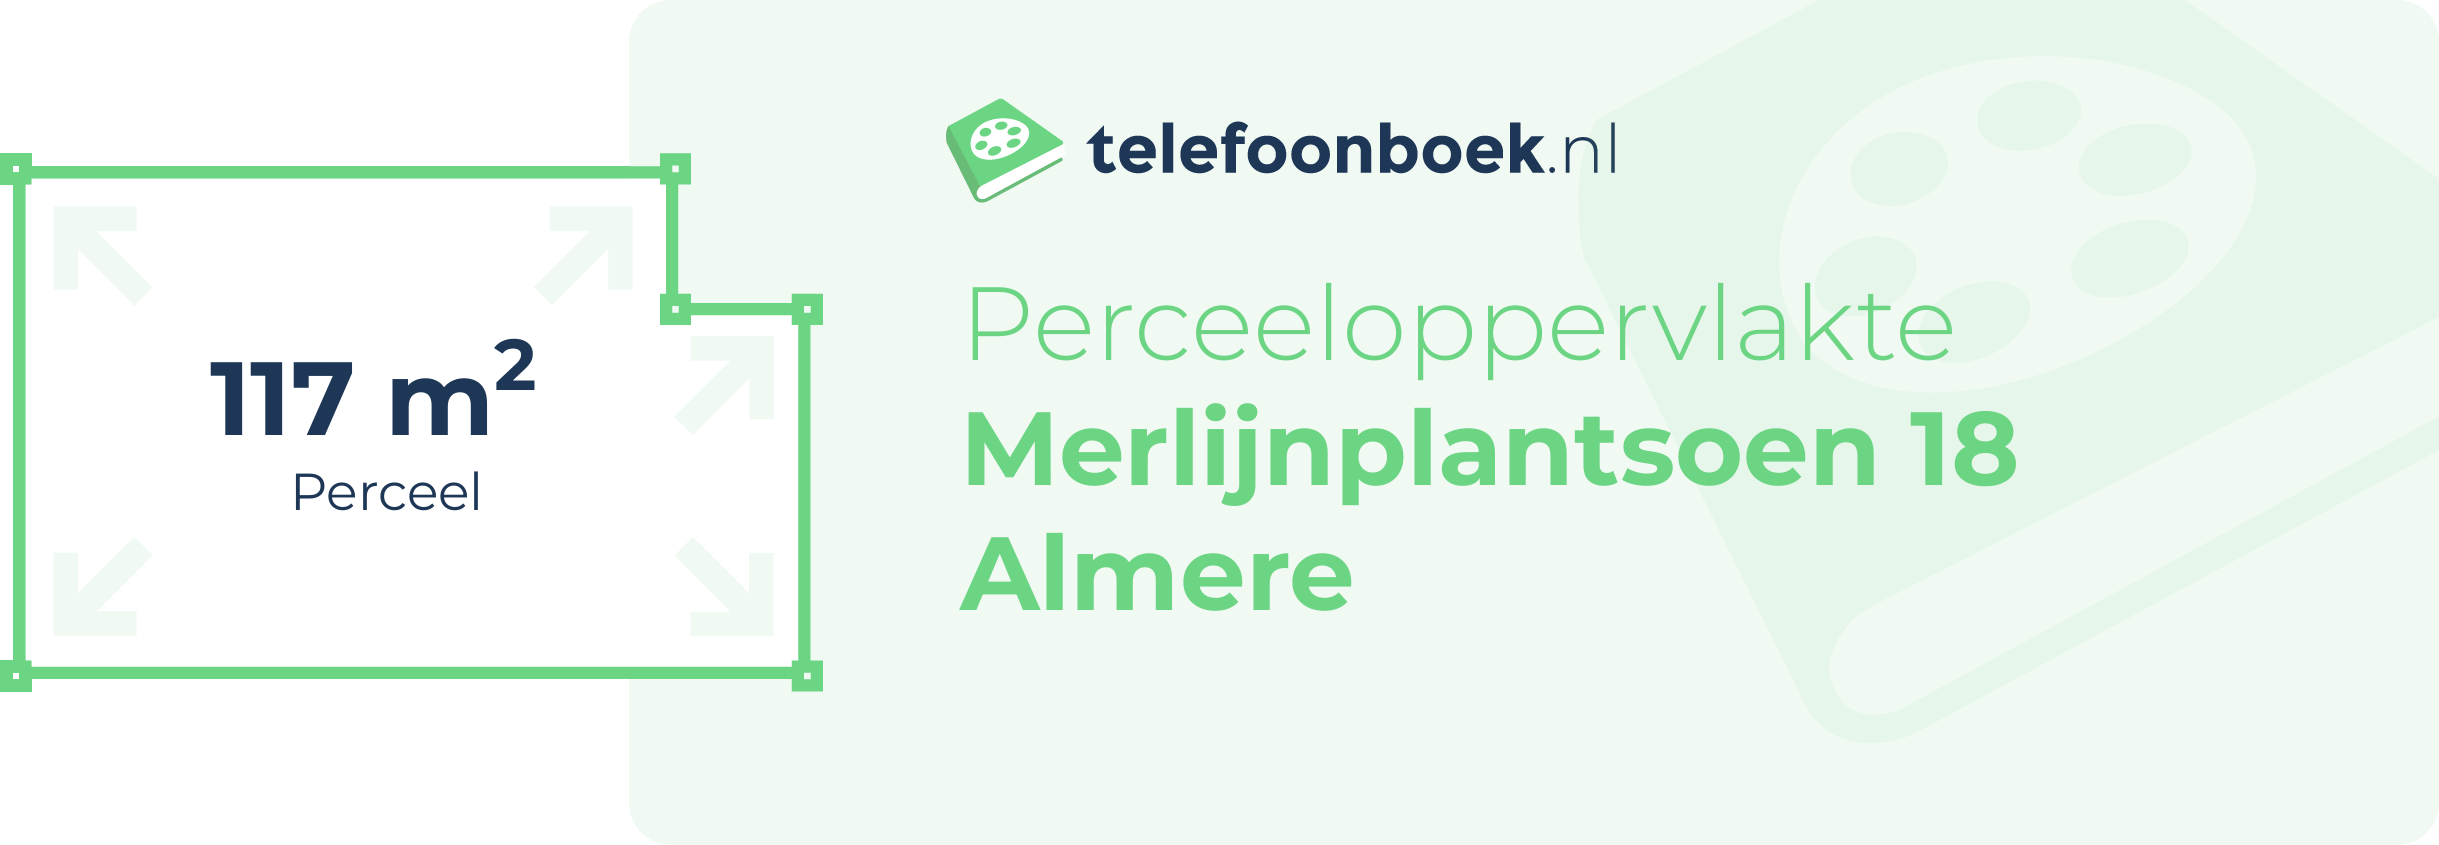 Perceeloppervlakte Merlijnplantsoen 18 Almere